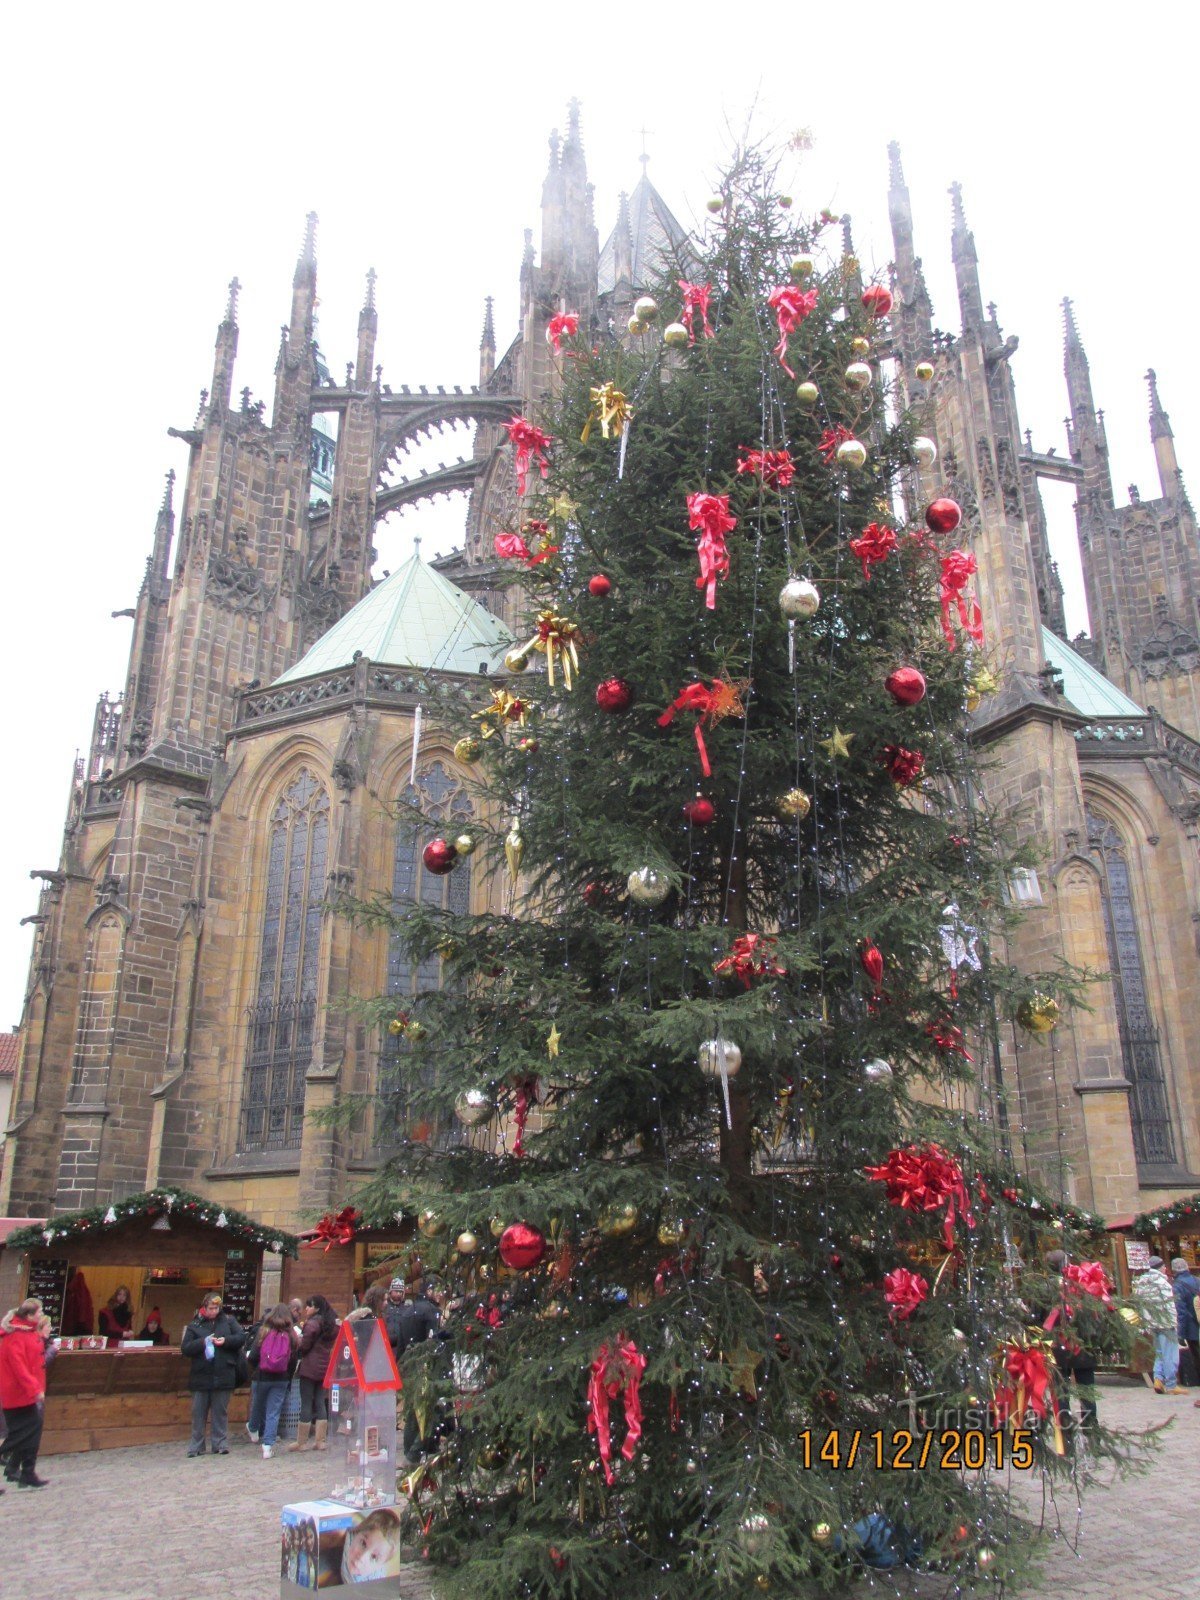 Mercados de Natal no Castelo de Praga